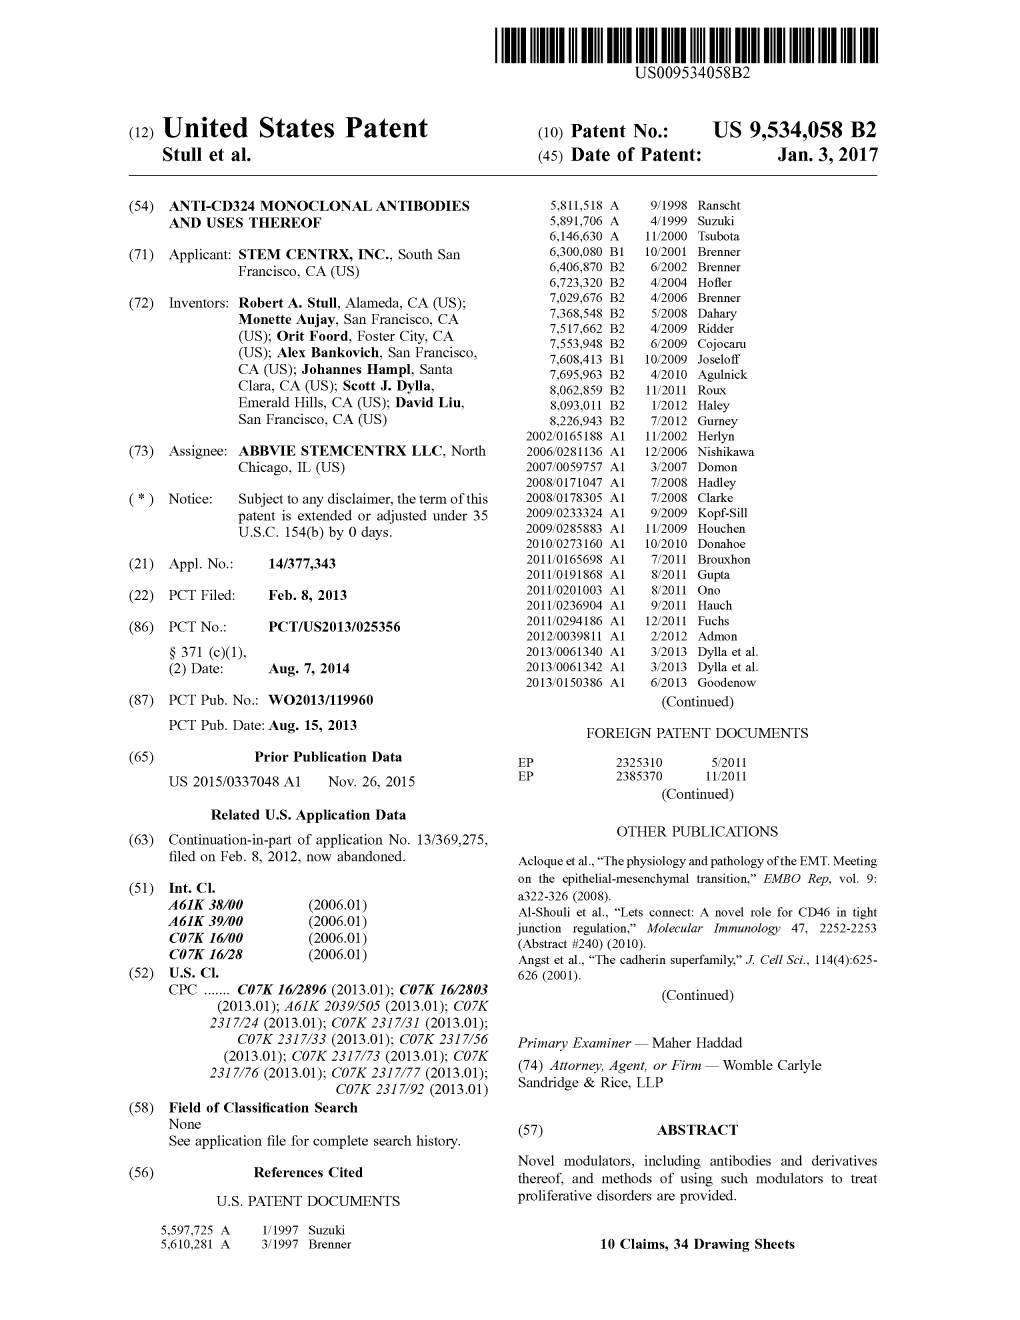 United States Patent (10) Patent No.: US 9,534,058 B2 Stull Et Al